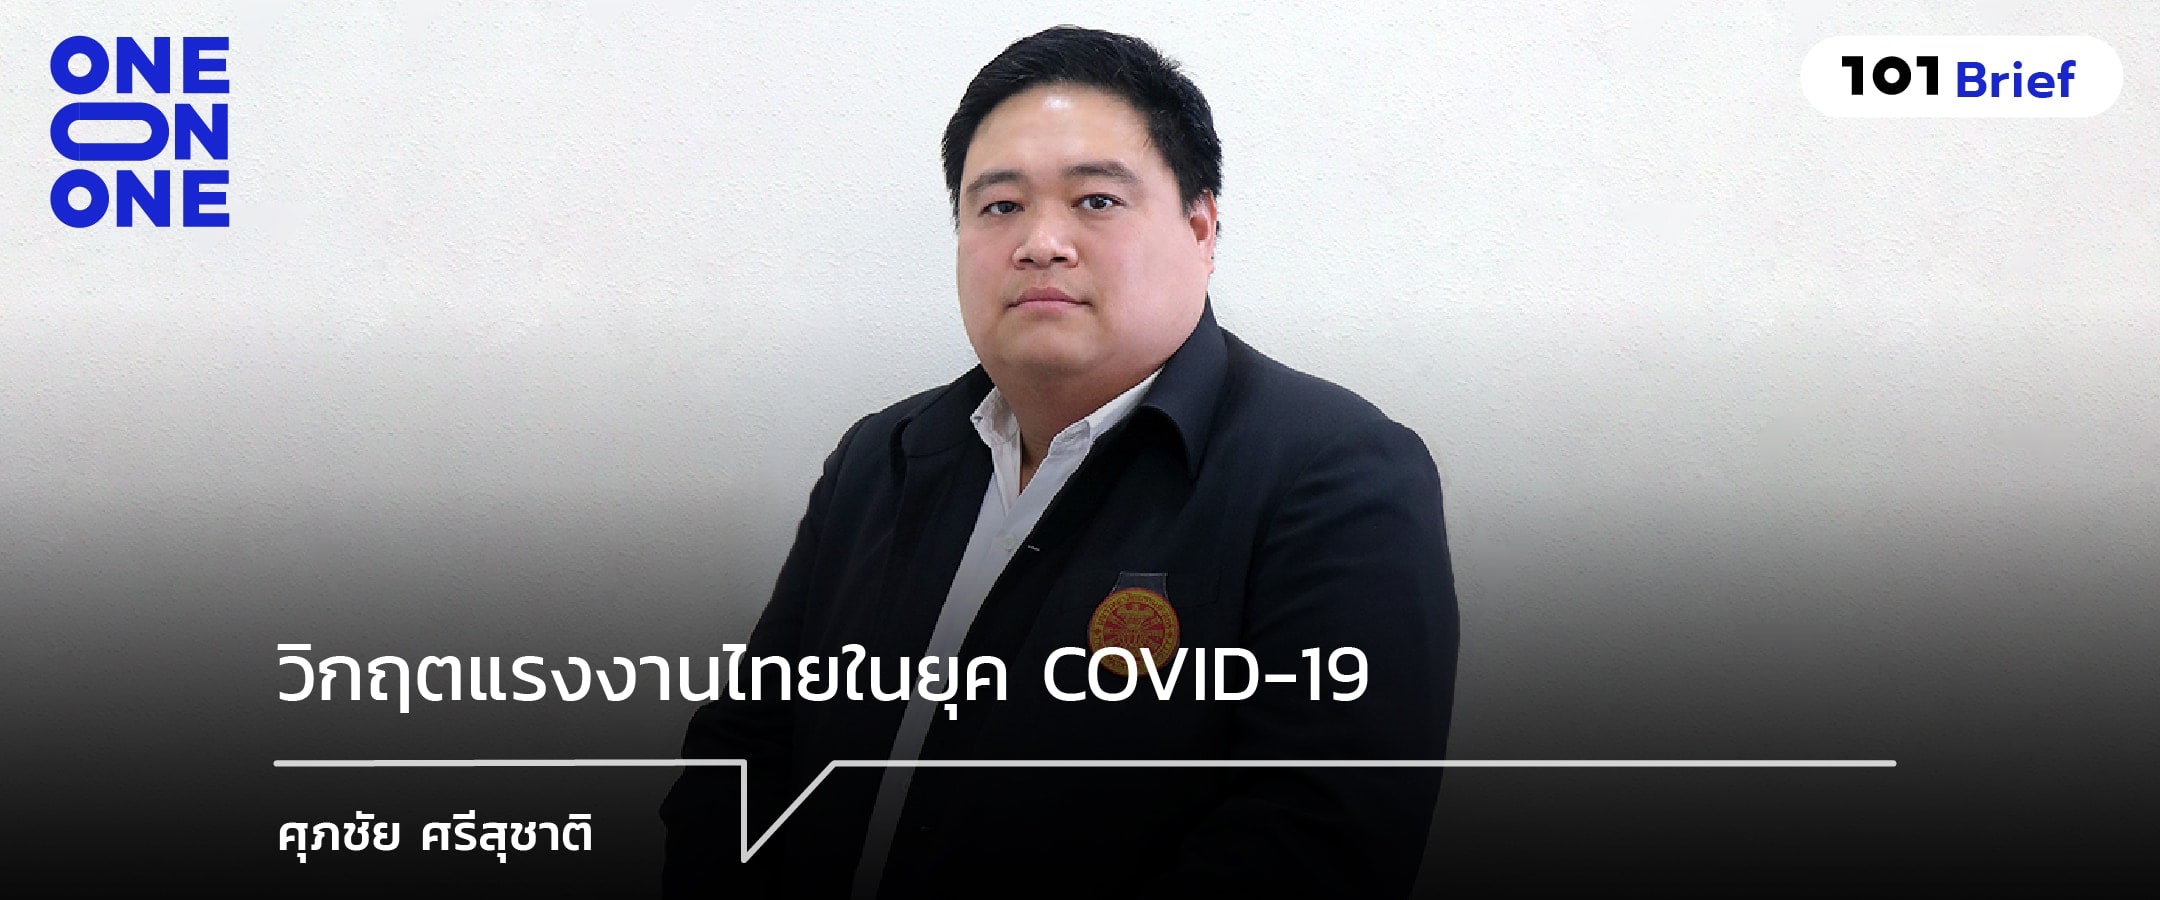 วิกฤตแรงงานไทยในยุค COVID-19 : ศุภชัย ศรีสุชาติ